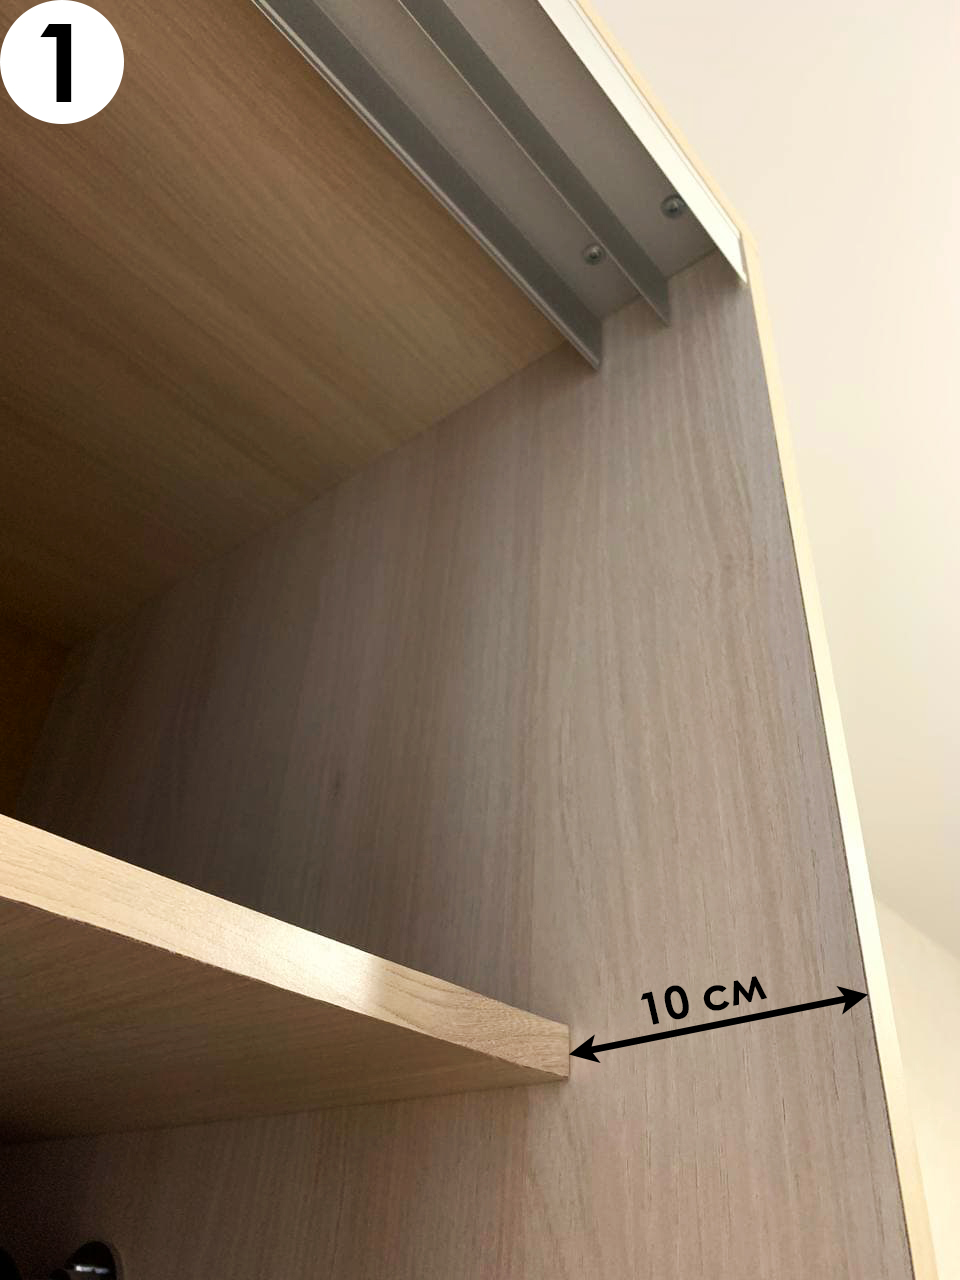 Как осуществить расчет размеров дверей шкафа-купе?